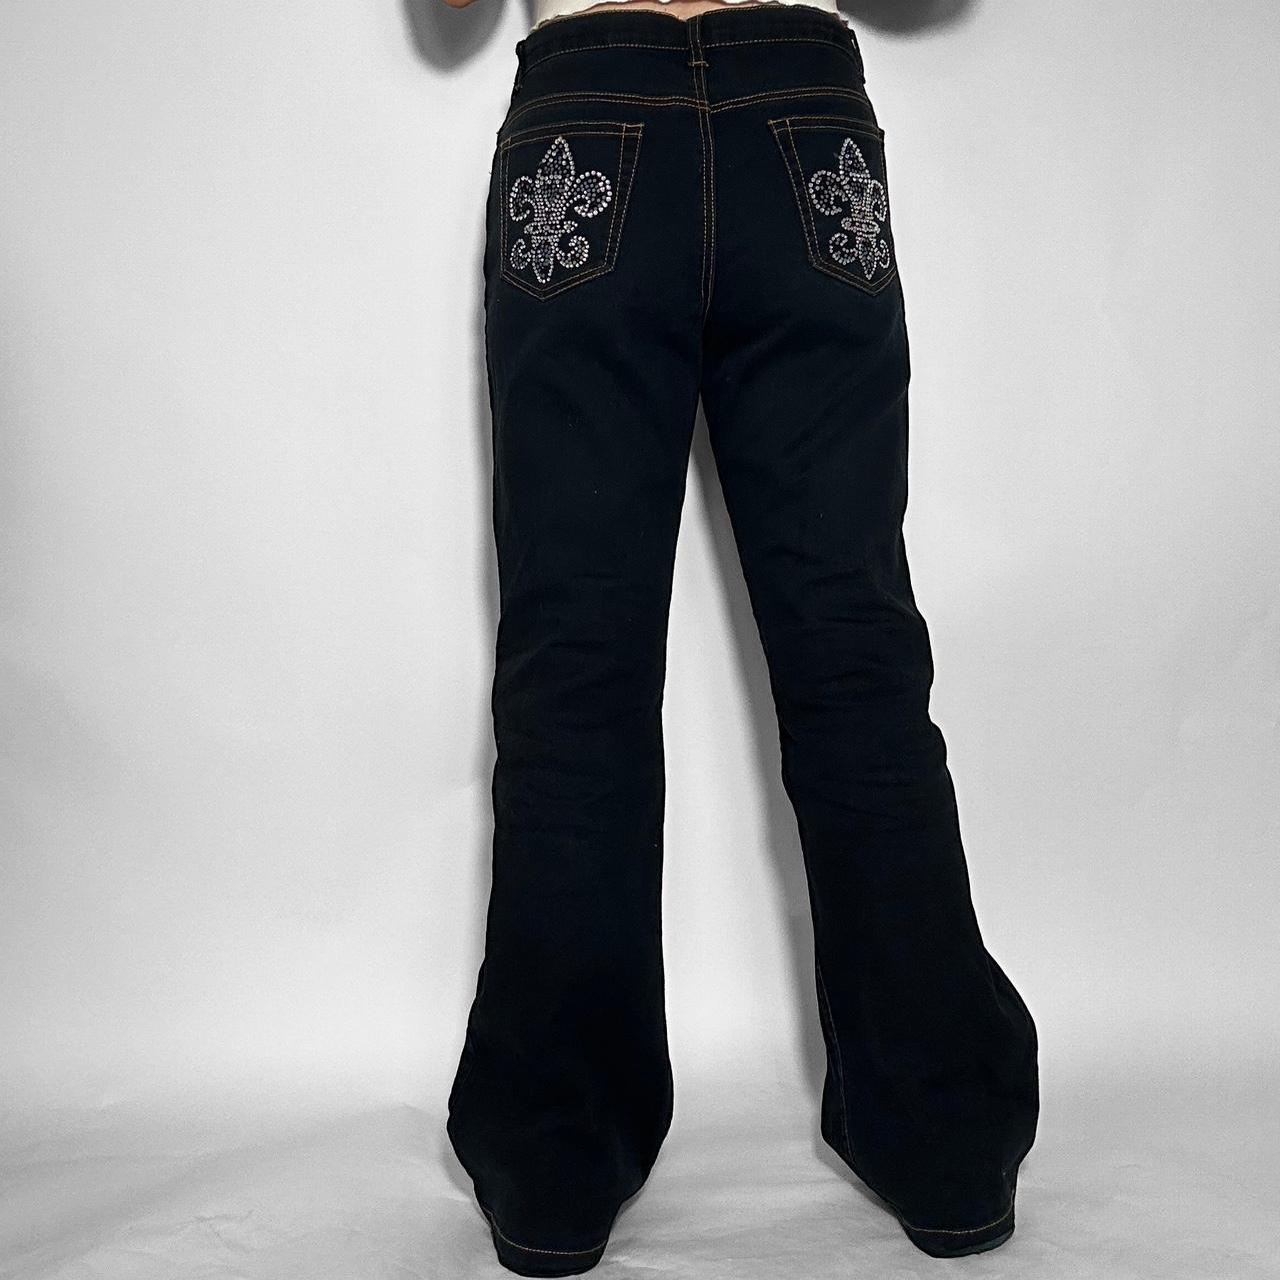 Vintage y2k sparkle diamanté detailing bootcut jeans